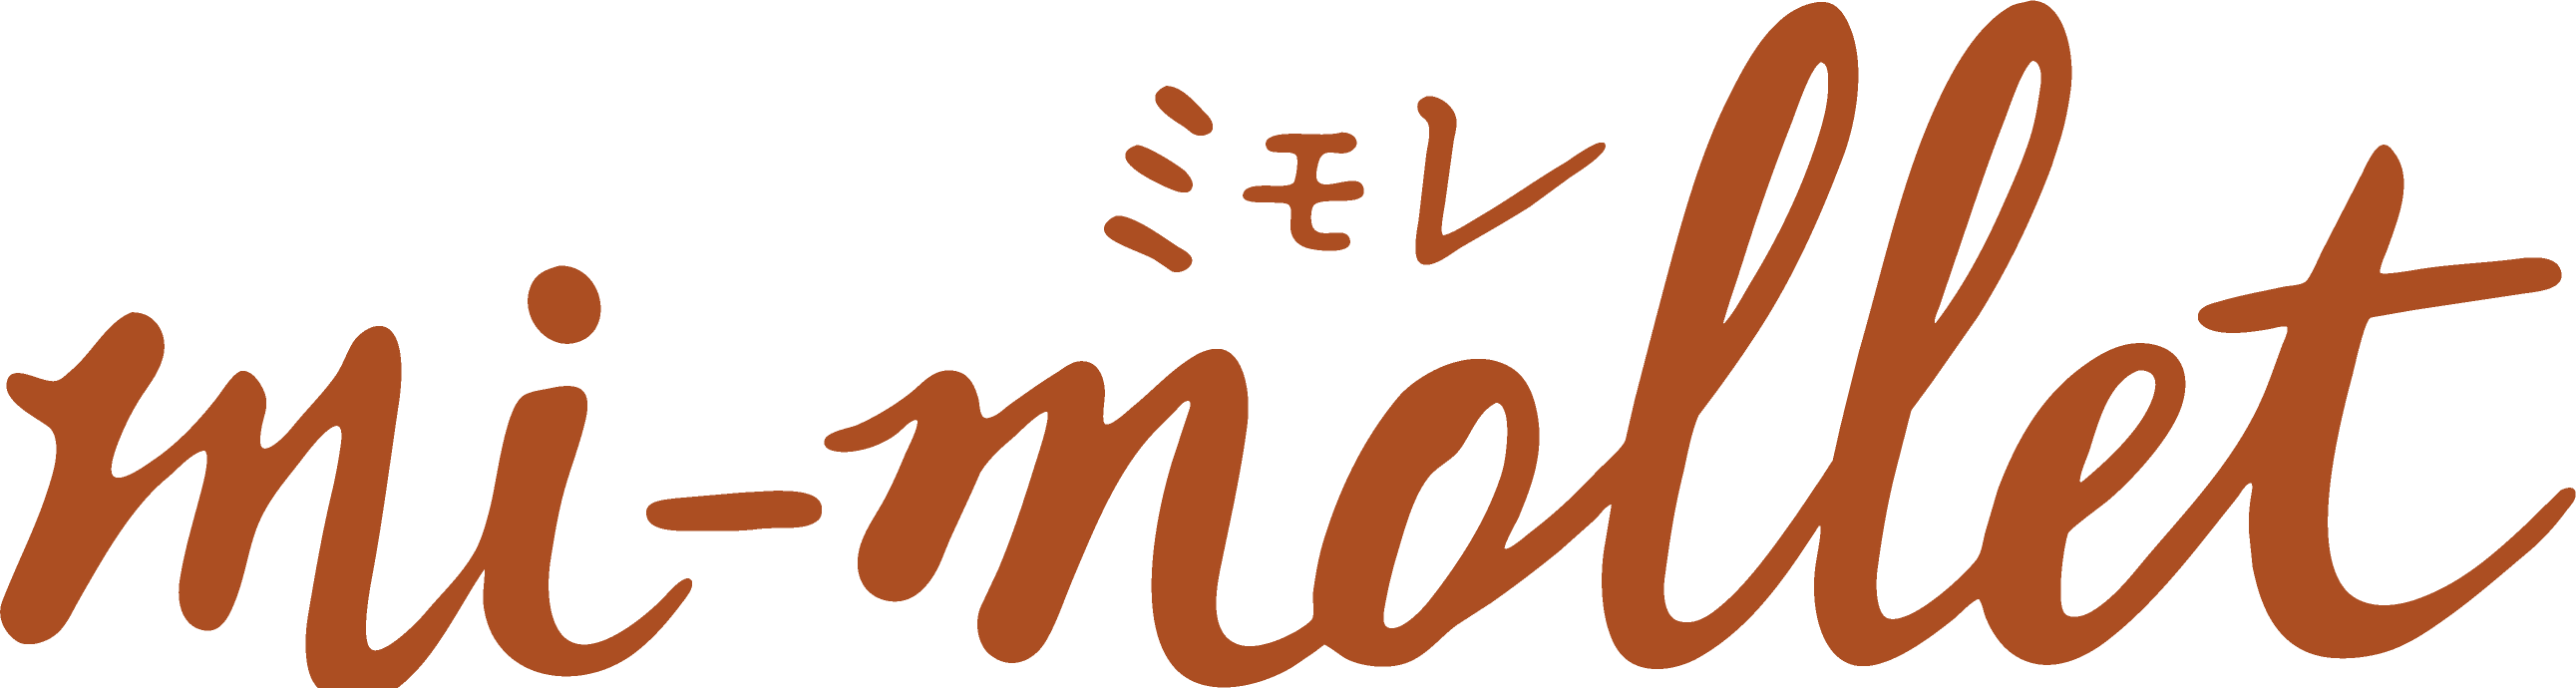 ミモレ / mi-mollet